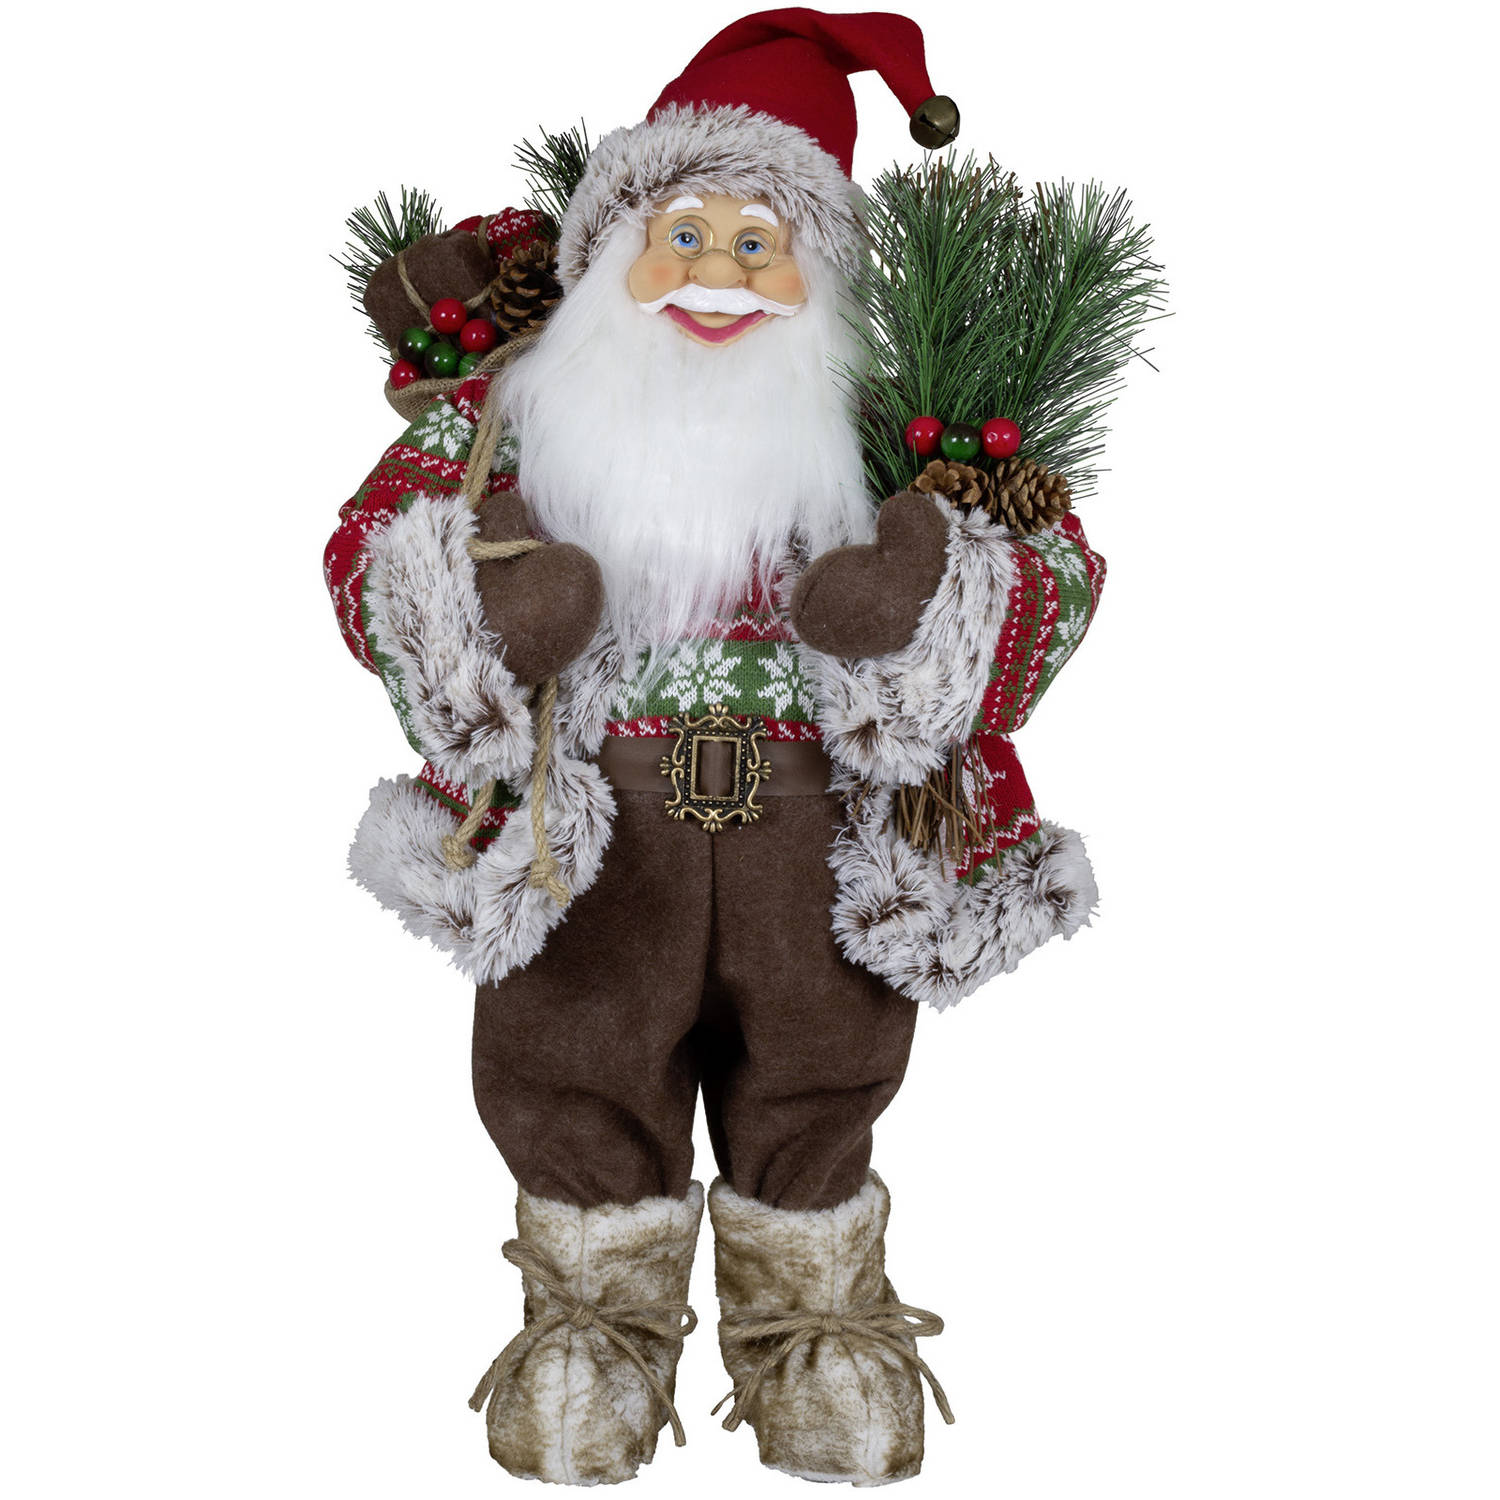 Kerstman decoratie pop Peter - H60 cm - rood - staand - kerst beeld - kerst figuur